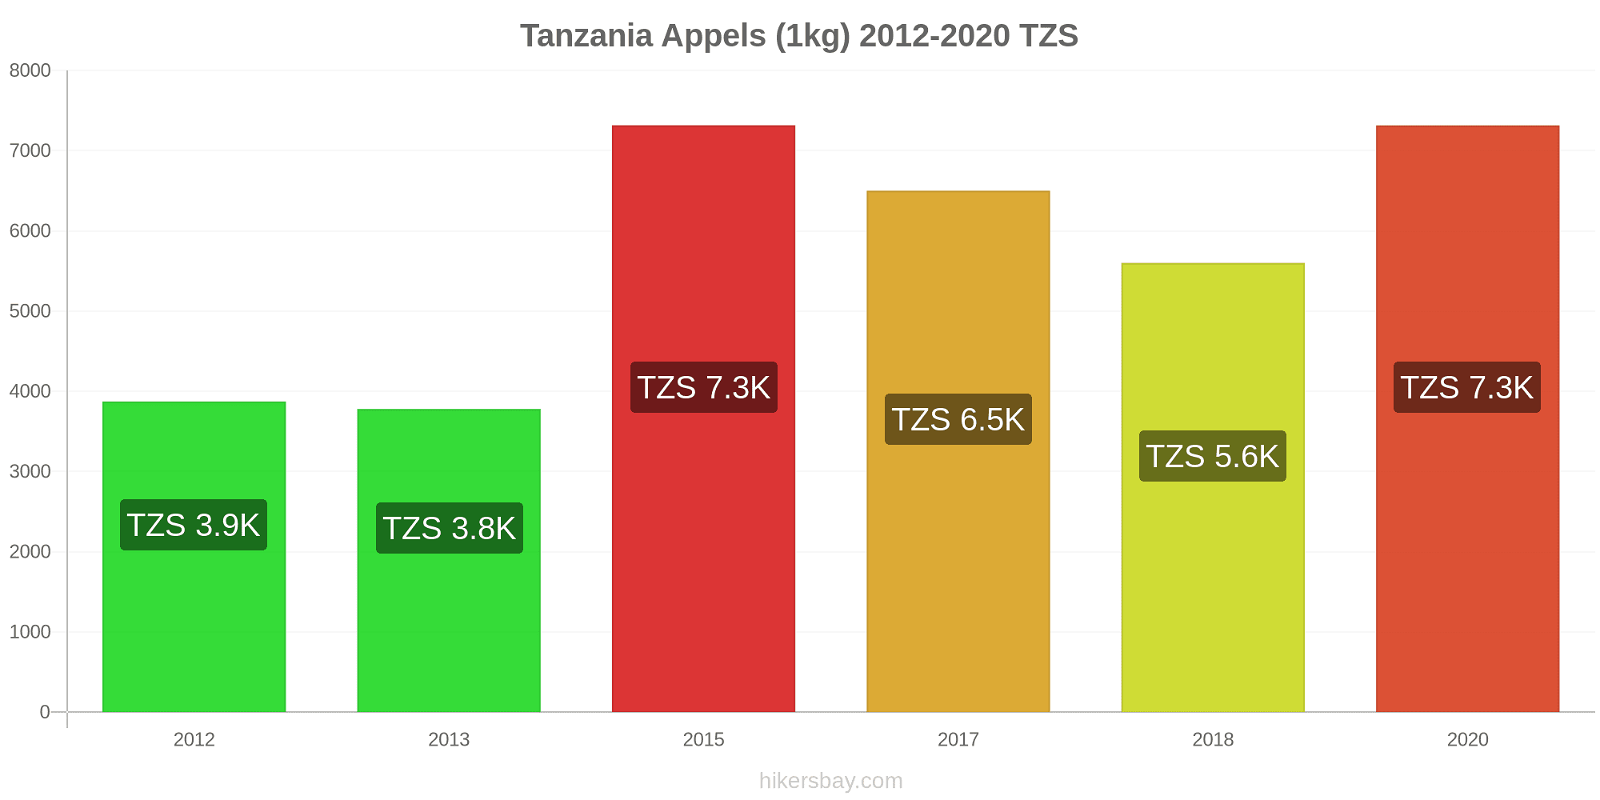 Tanzania prijswijzigingen Appels (1kg) hikersbay.com